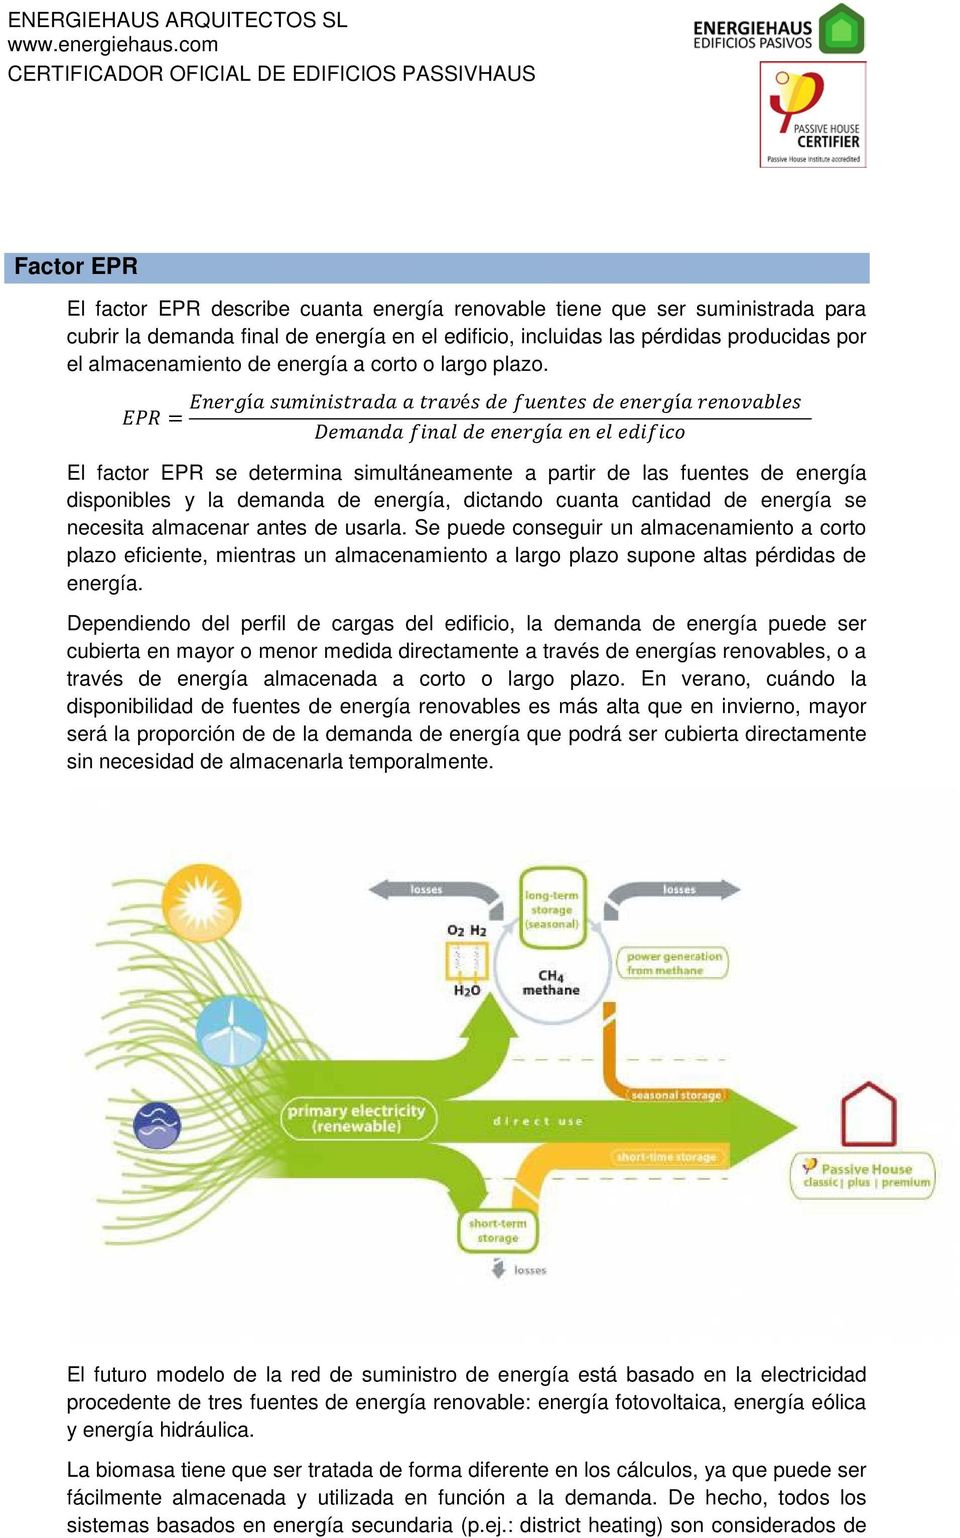 EPR = Energía suministrada a través de fuentes de energía renovables Demanda final de energía en el edifico El factor EPR se determina simultáneamente a partir de las fuentes de energía disponibles y